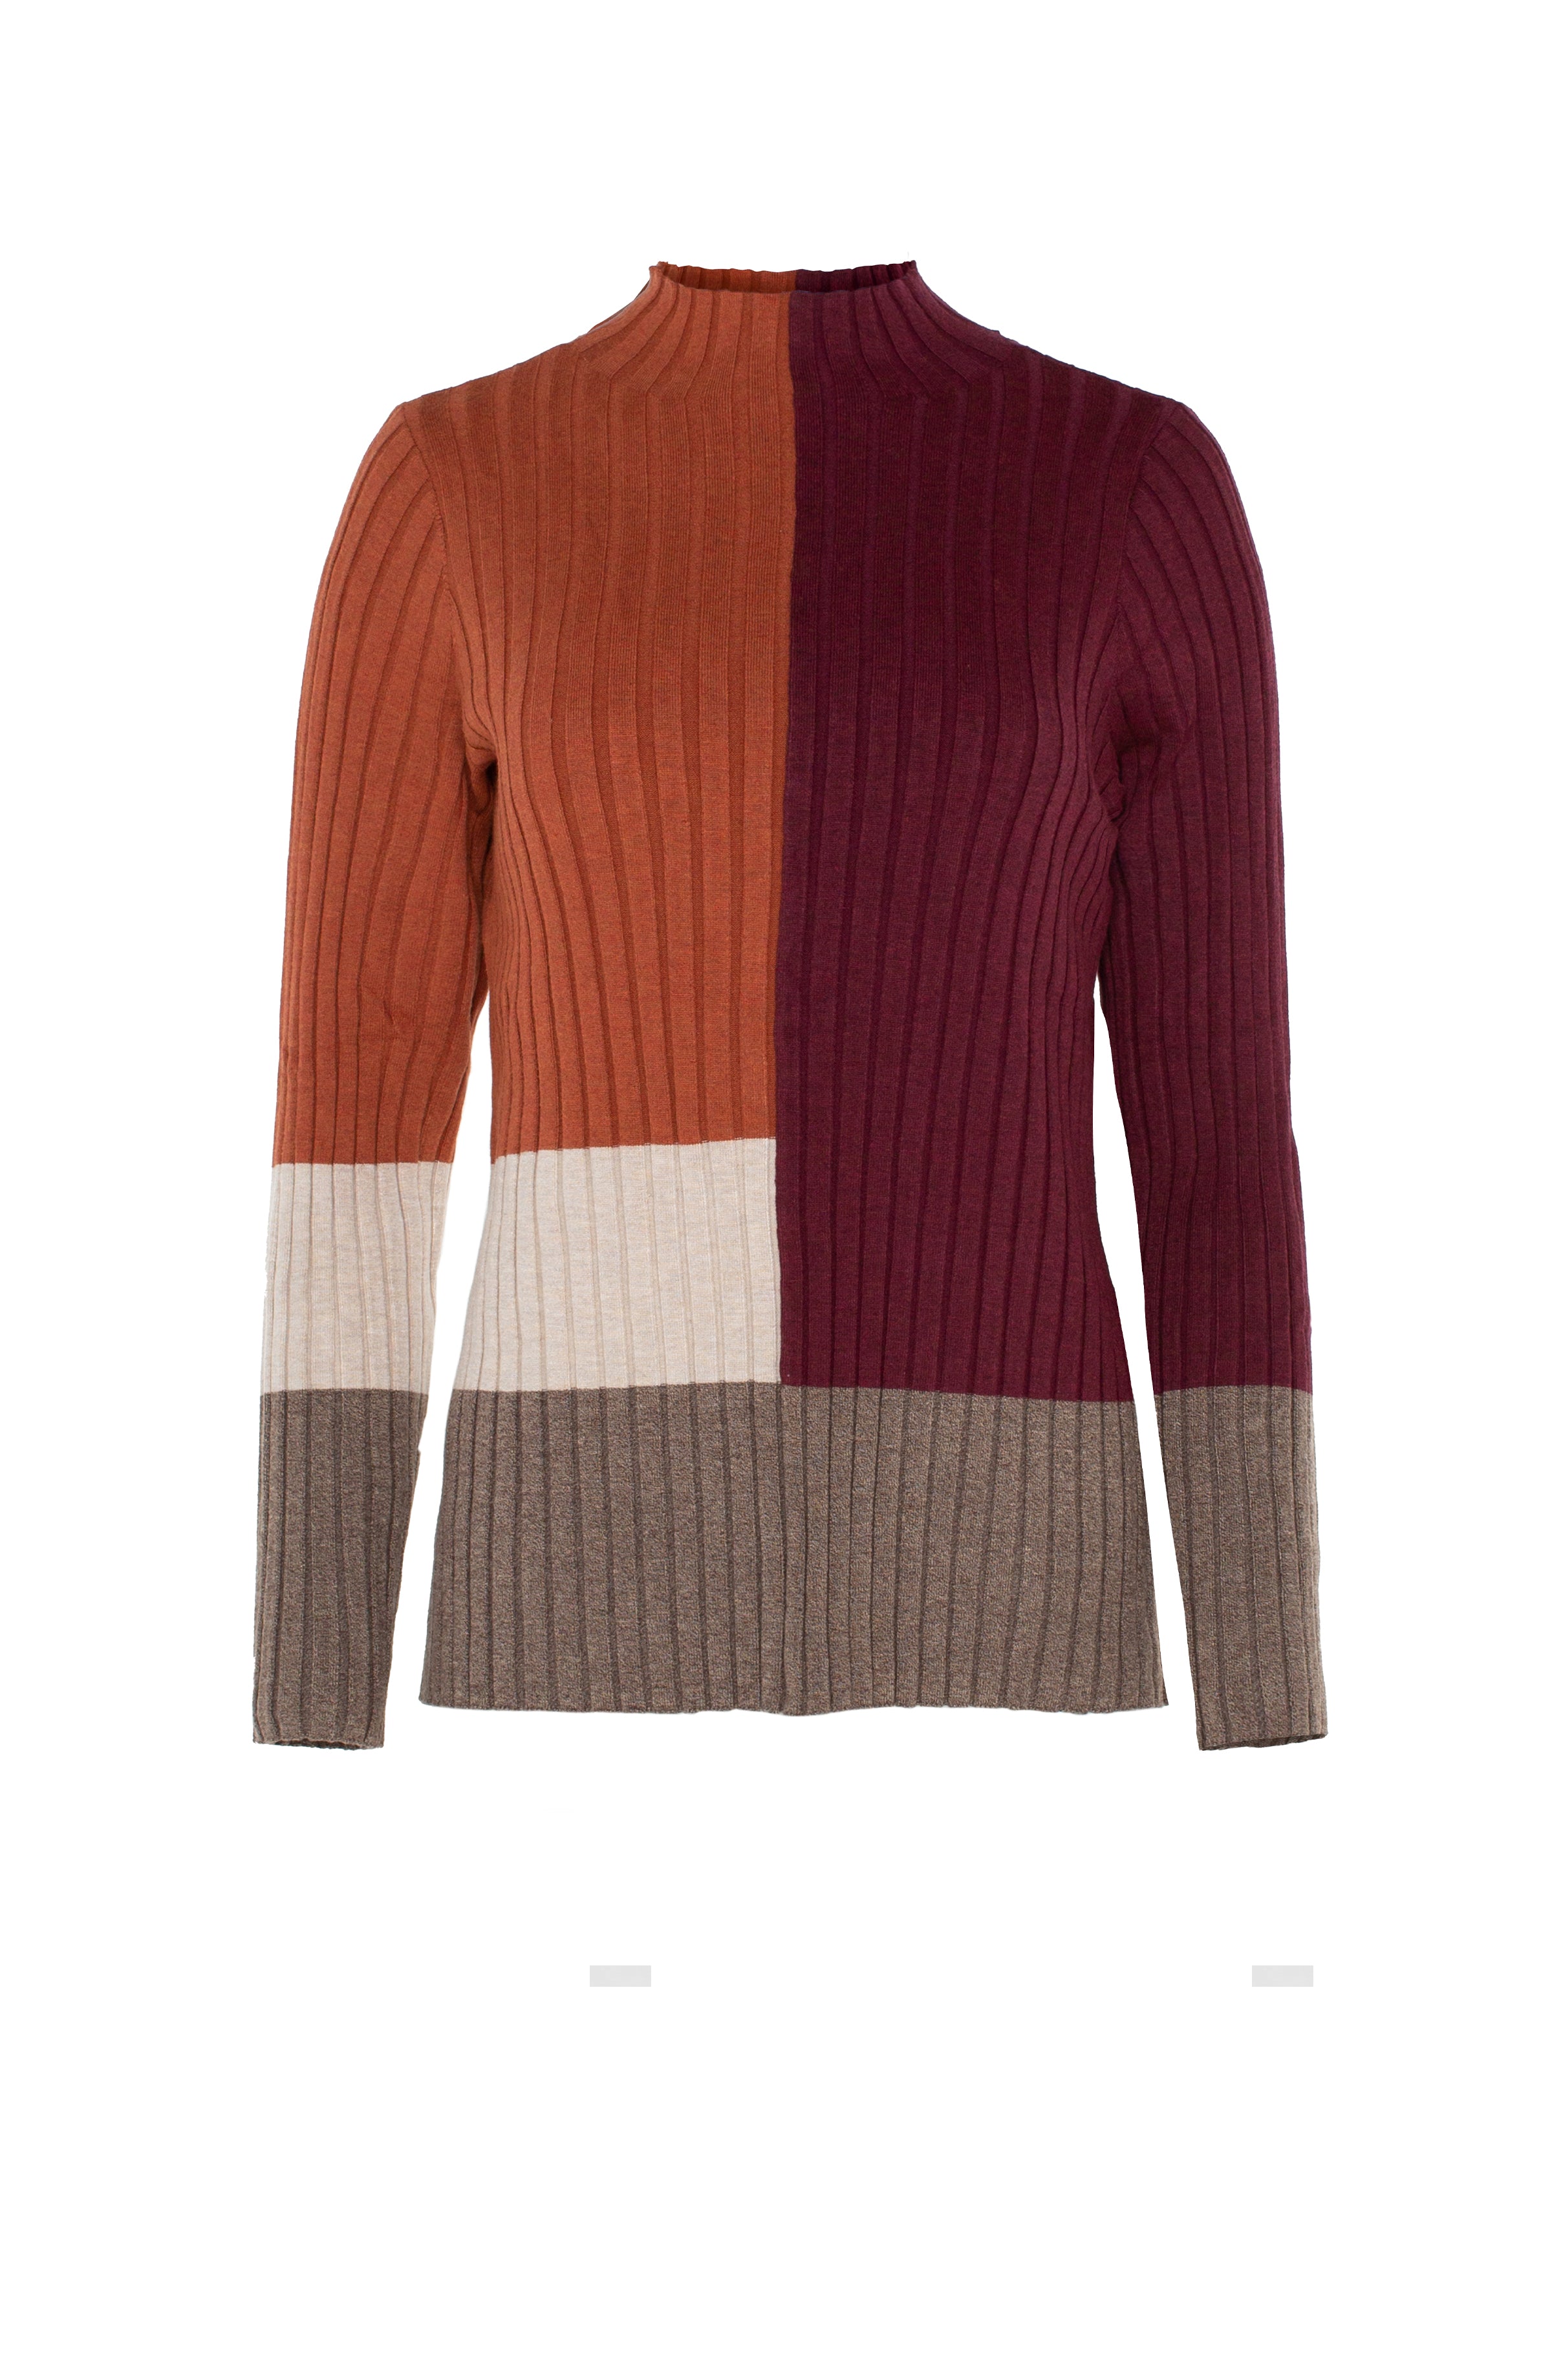 LPLA Colorblock Mockneck Sweater